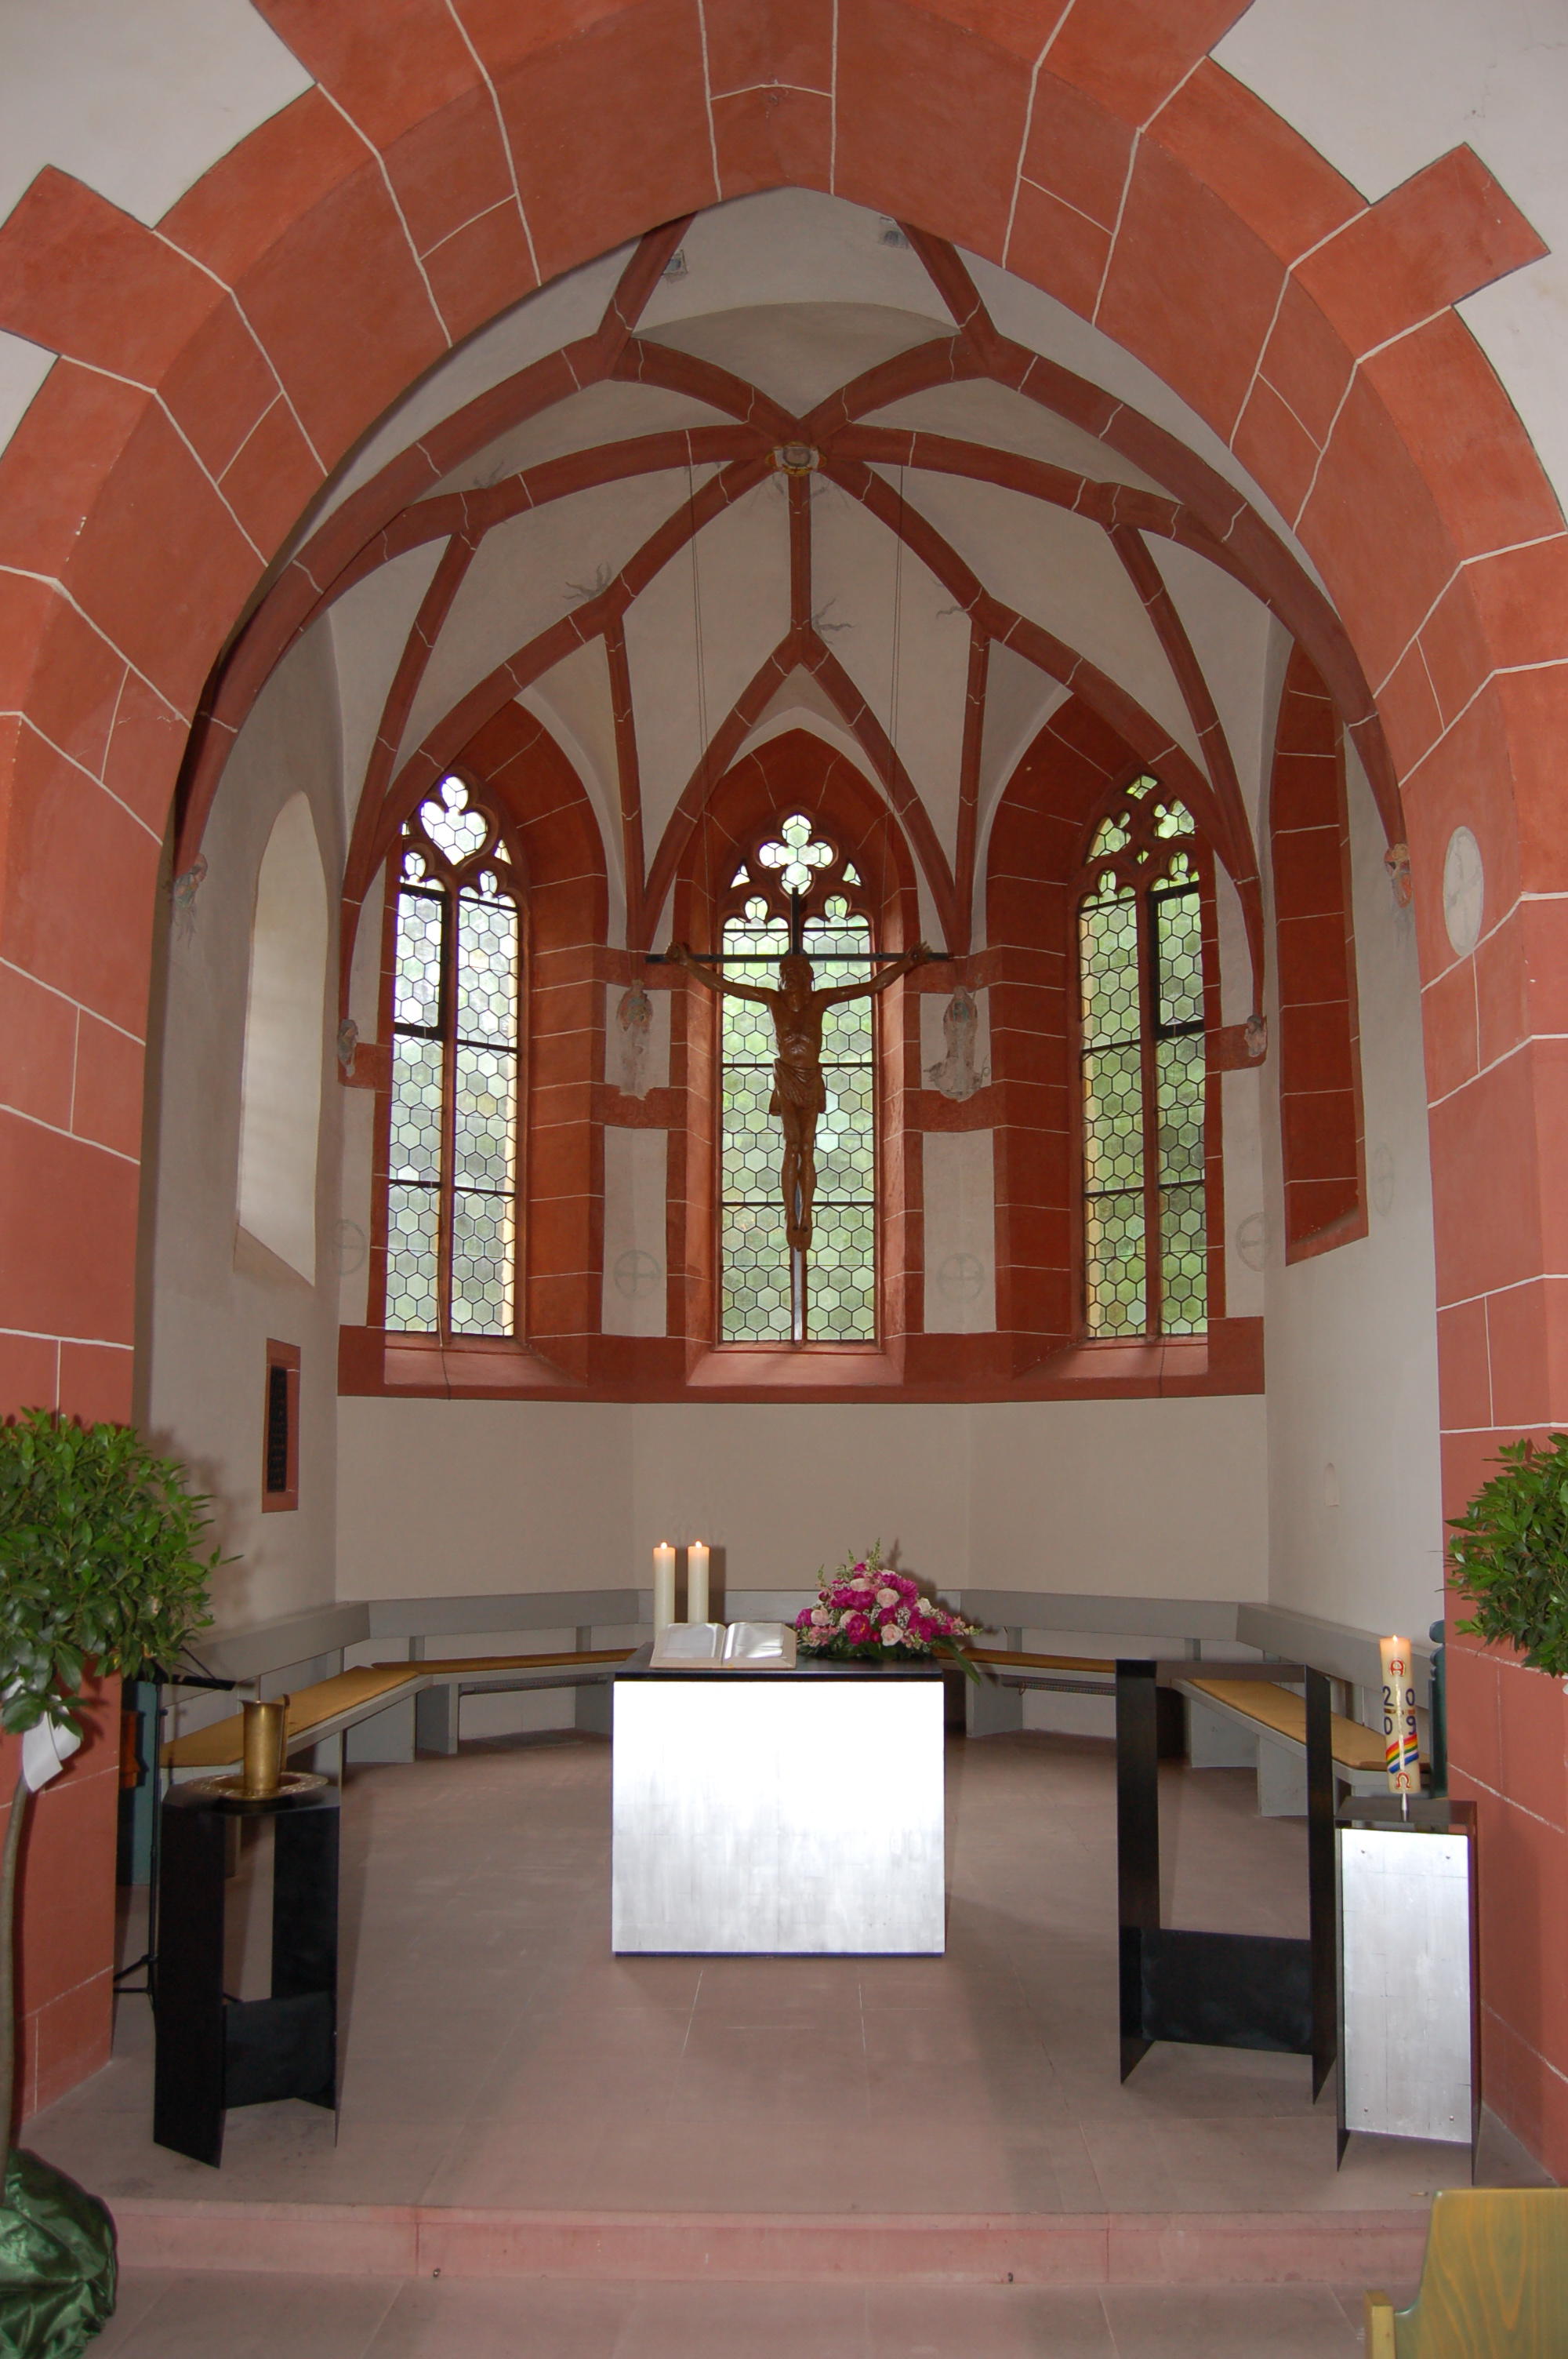 Bilder Evangelische Kirche Niederlibbach - Evangelische Kirchengemeinde Niederlibbach